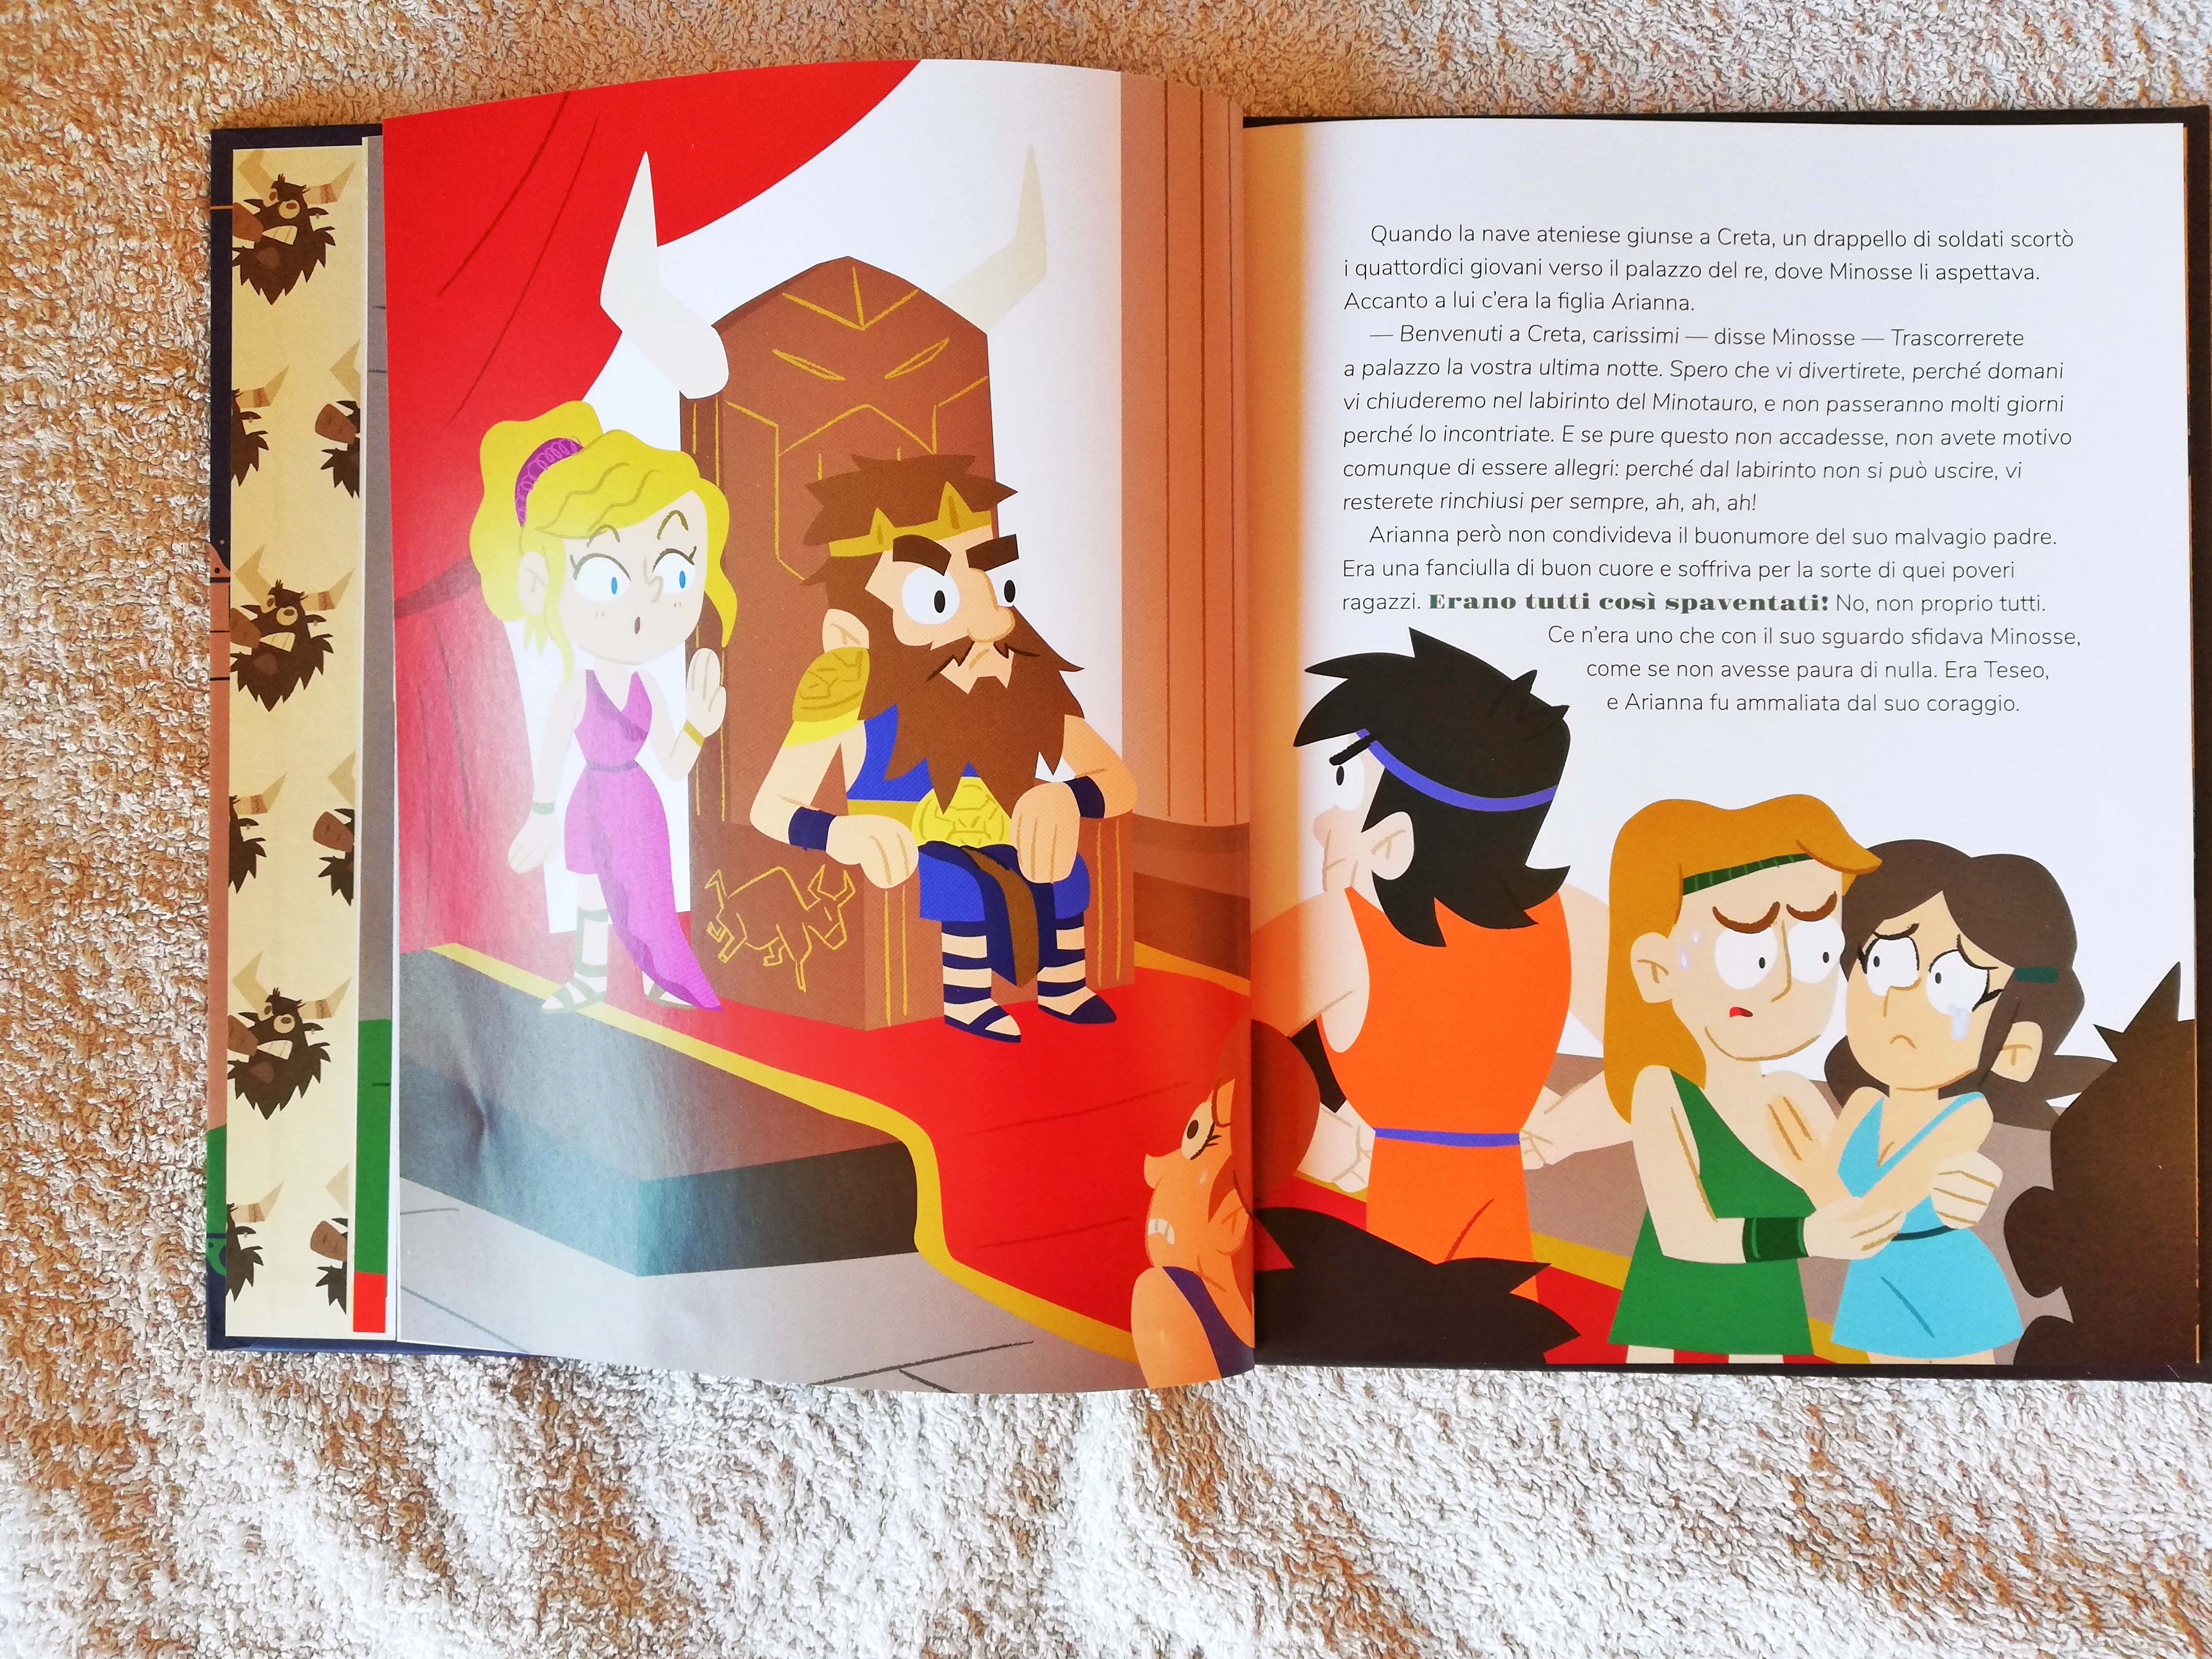 Mitologia per bambini: la nuova collana illustrata di Hachette -  Peachroseblog